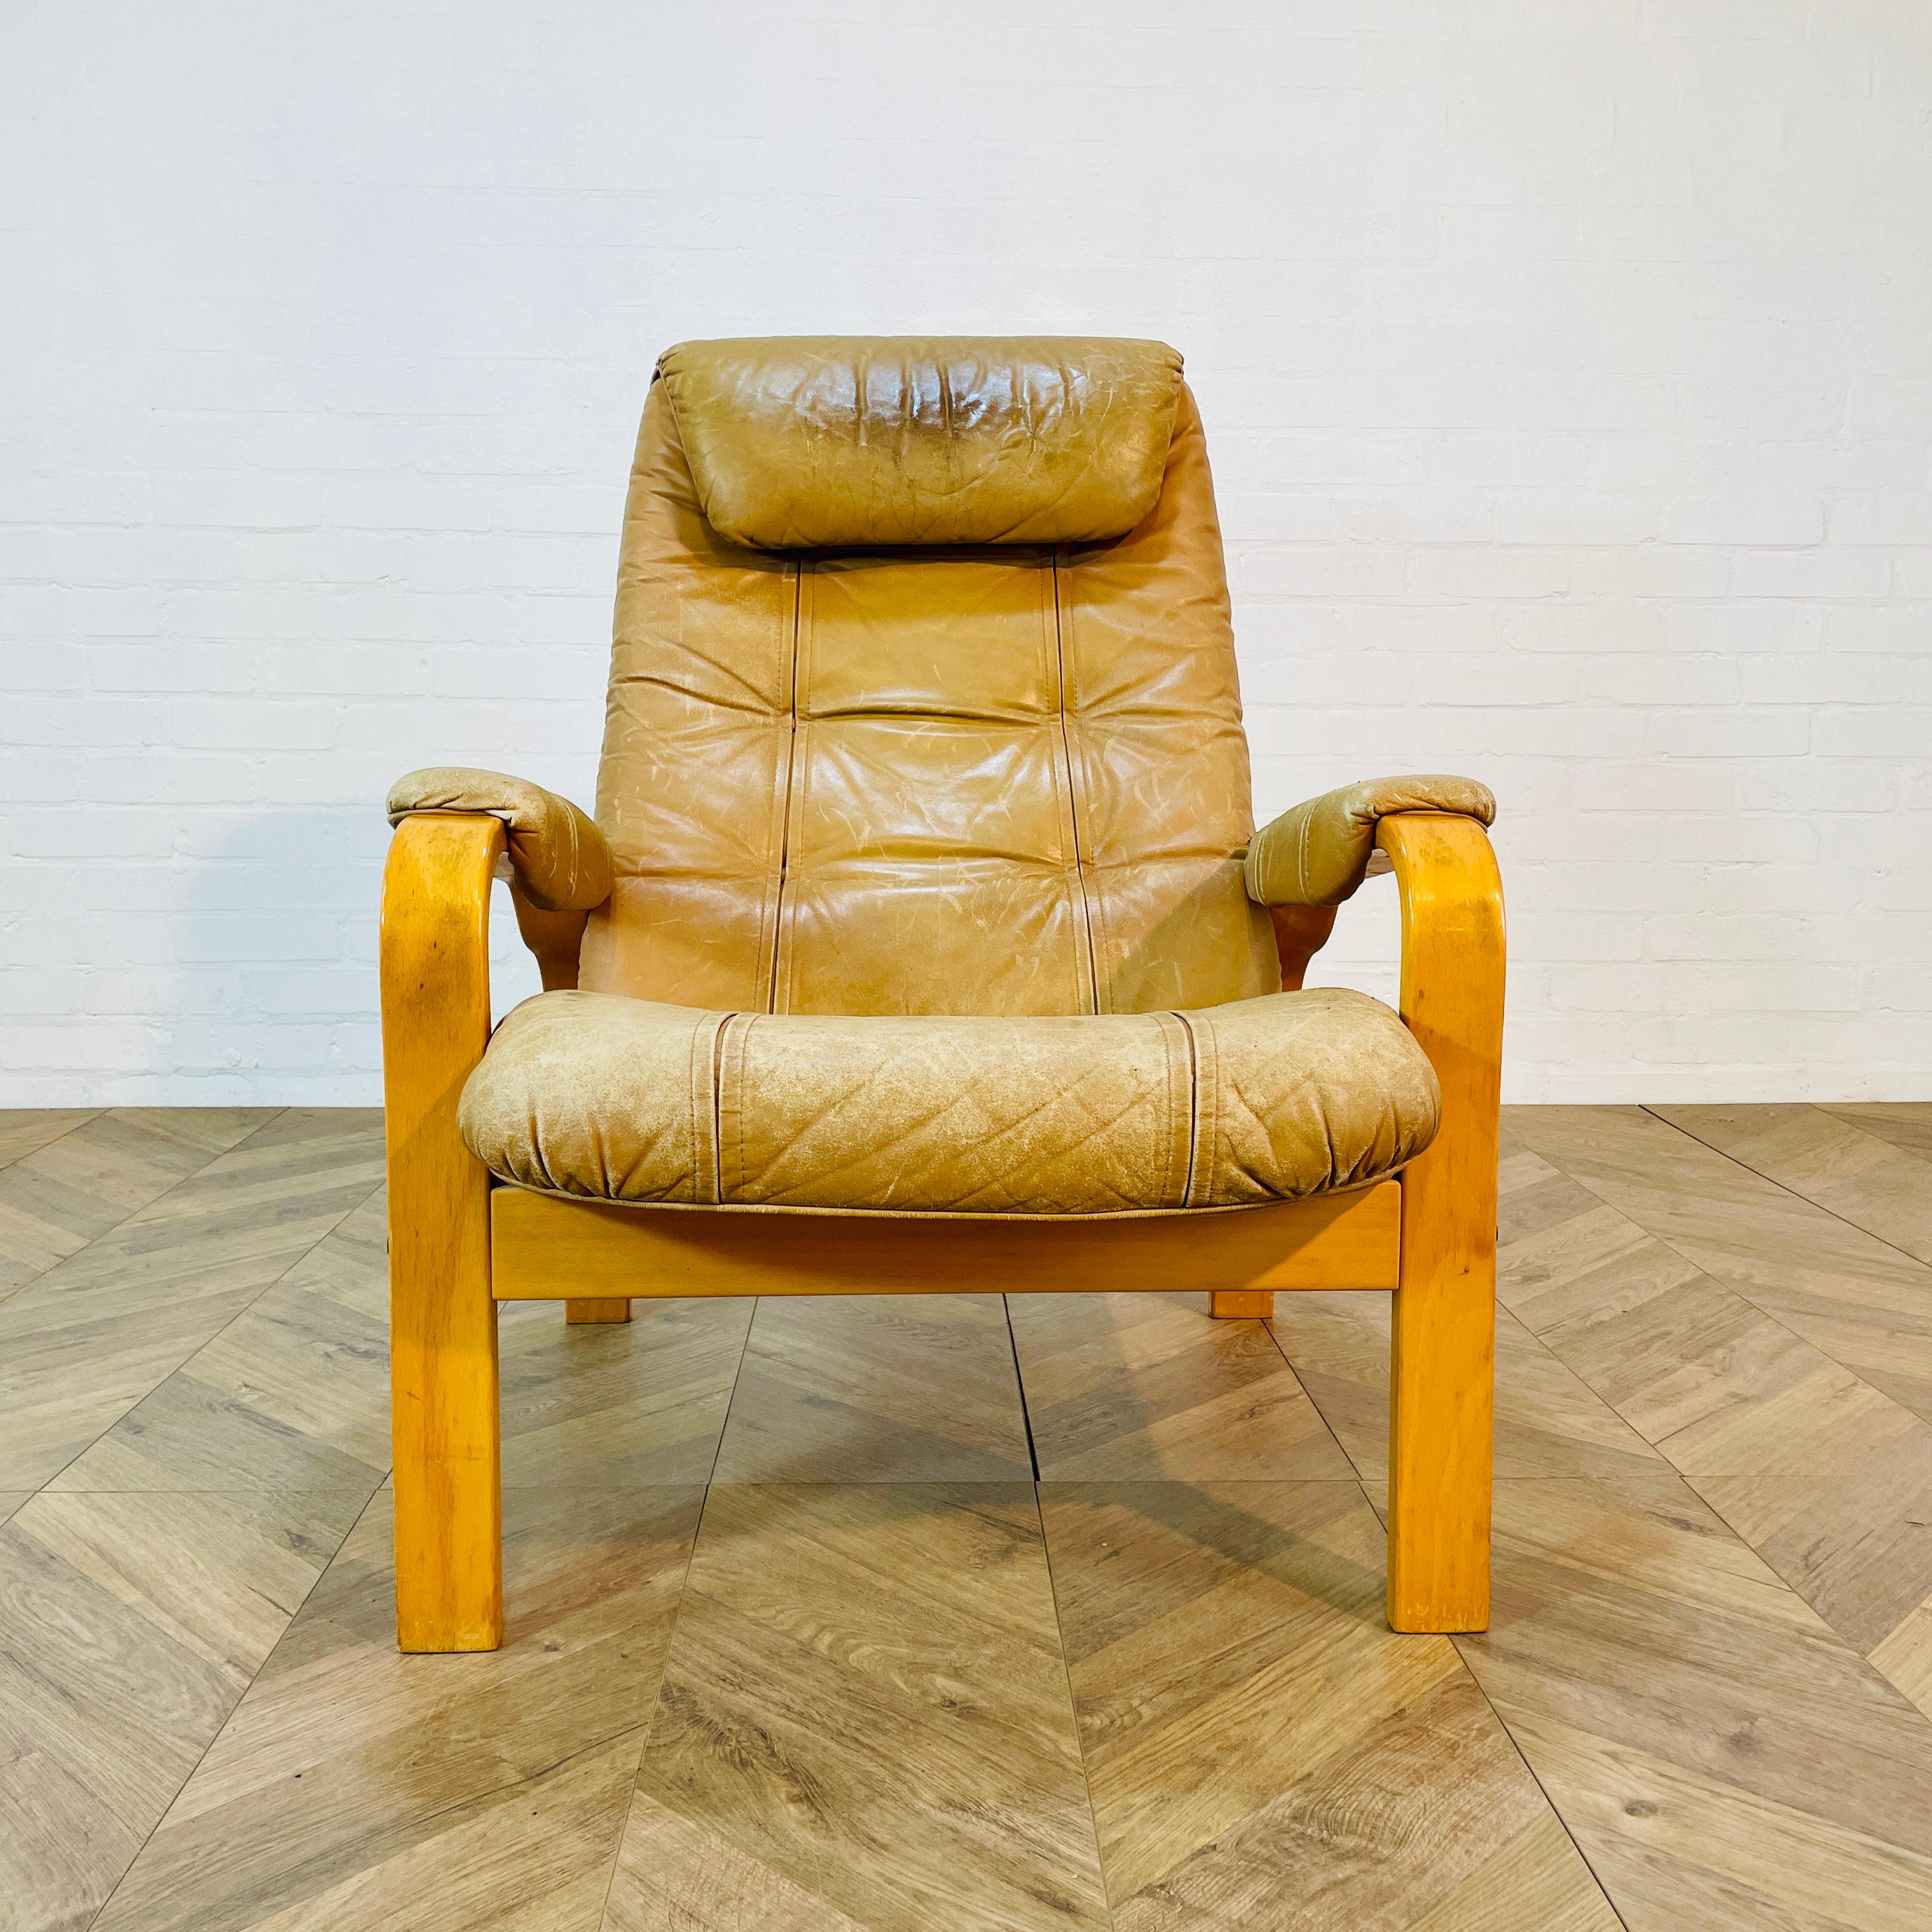 Chaise longue en cuir rétro de la société norvégienne Skoghaug Industries, vers la fin des années 1970.

La chaise est fabriquée à partir d'un matériau en cuir fauve et est en bon état vintage, avec une usure visible et de légères marques et